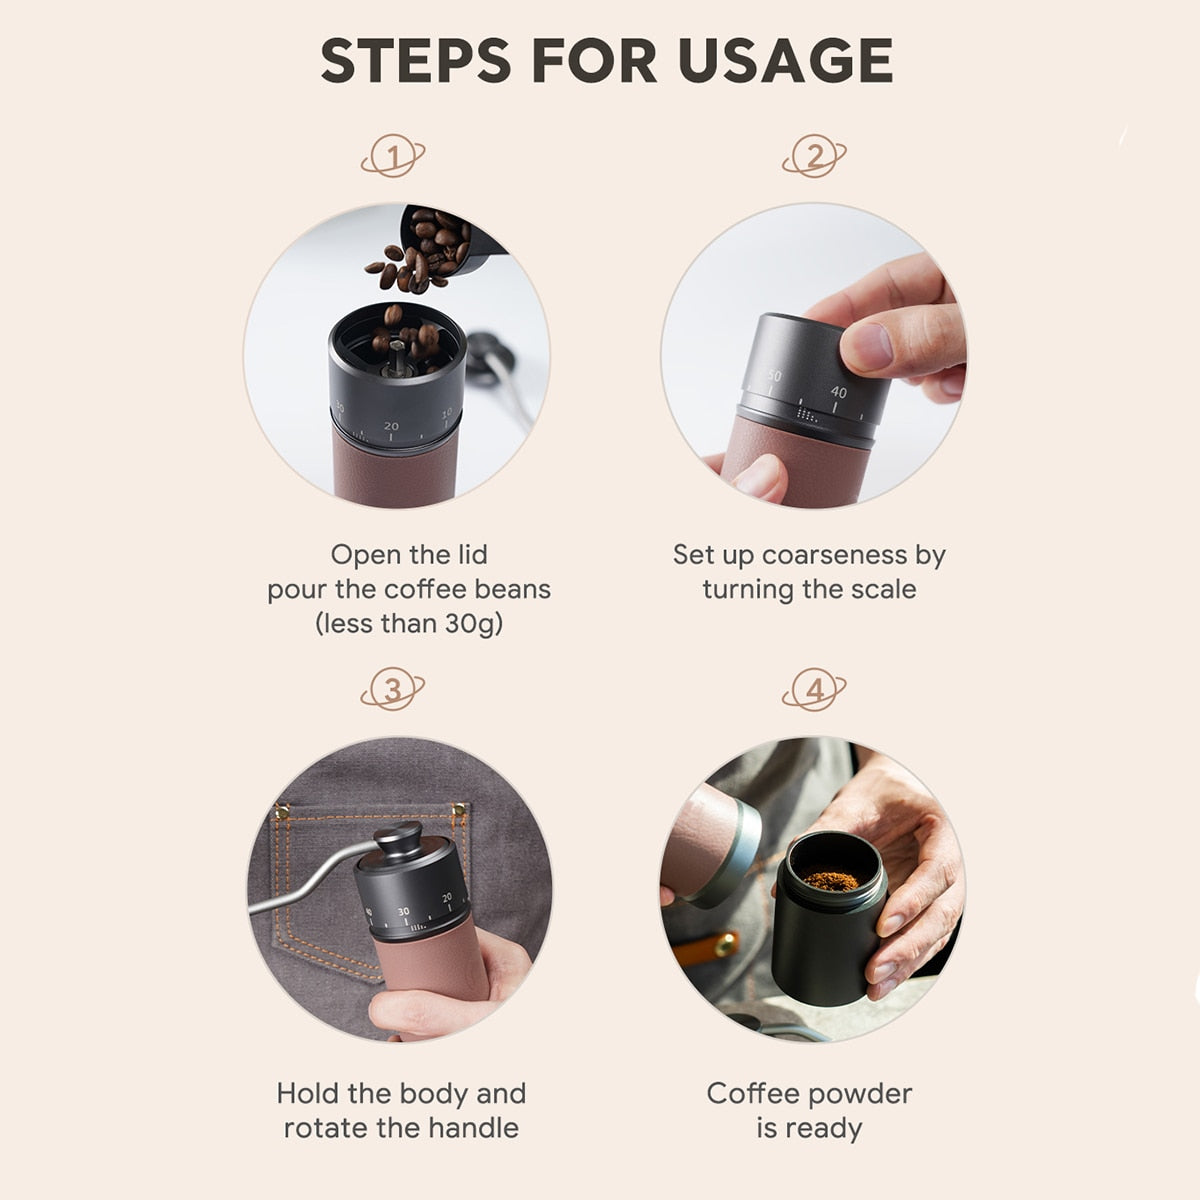 مطحنة القهوة اليدوية من iCafilas 420 من الفولاذ المقاوم للصدأ 30 جرام قوة القهوة 7 كور 40 ملم مطحنة يدوية مطلية بالتيتانيوم